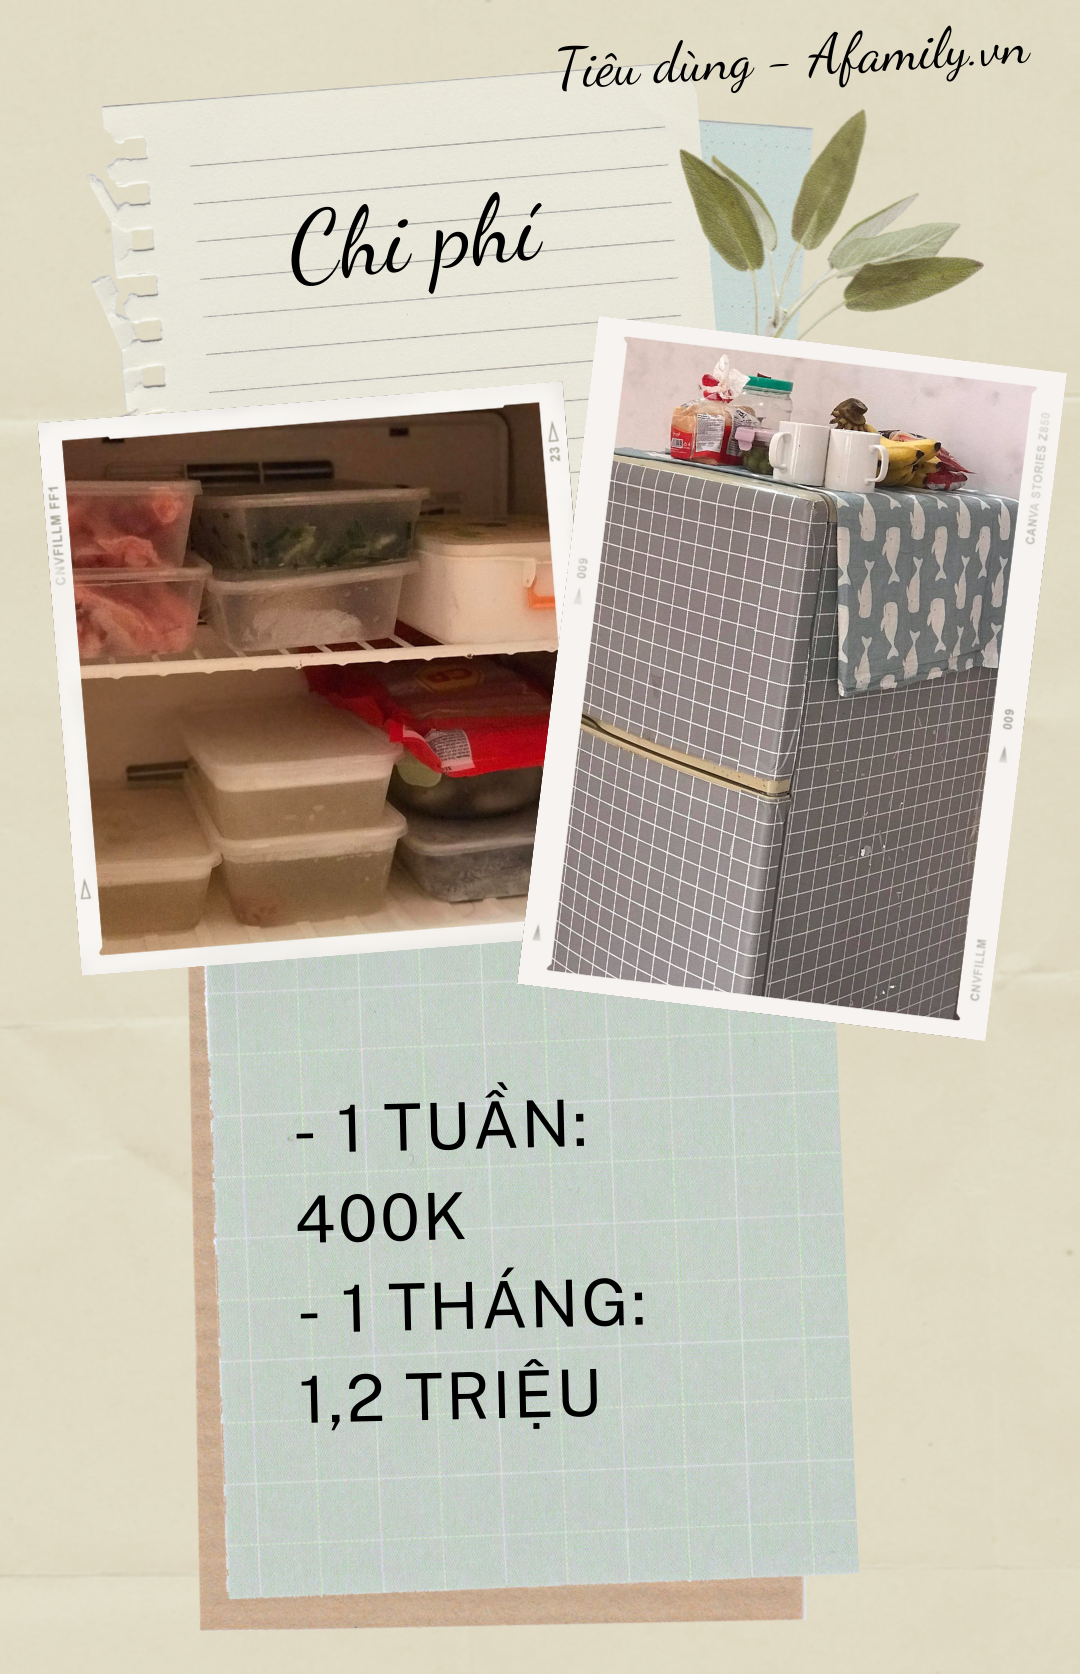 Mua chiếc tủ lạnh giá bình dân chưa tới 5 triệu, học cách đi chợ 1 lần/tuần giúp cô gái độc thân ở Hà Nội giảm được nửa tiền chi tiêu cho việc ăn uống - Ảnh 5.